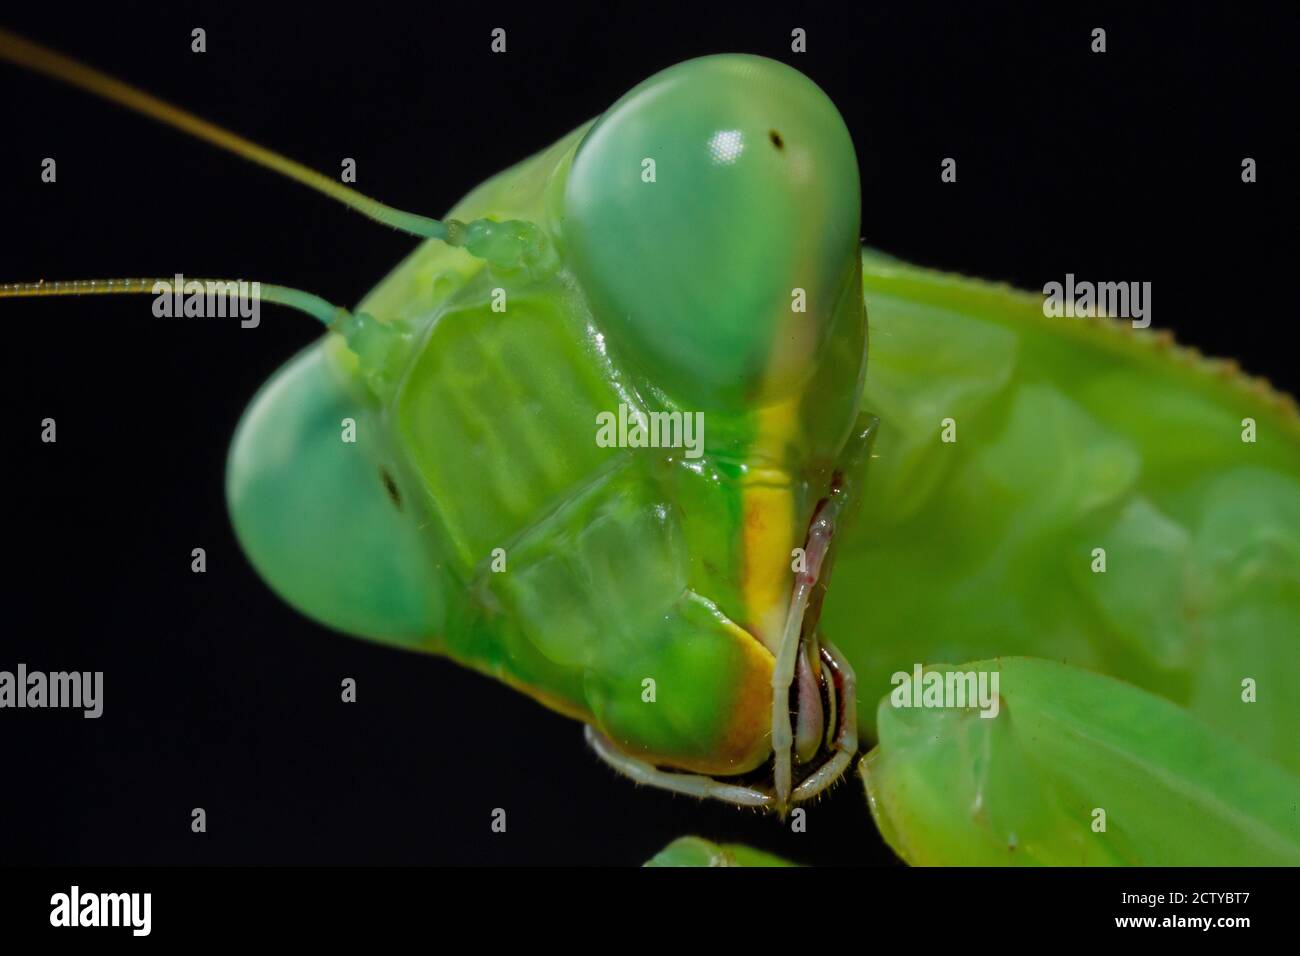 Close up of green praying mantis Stock Photo